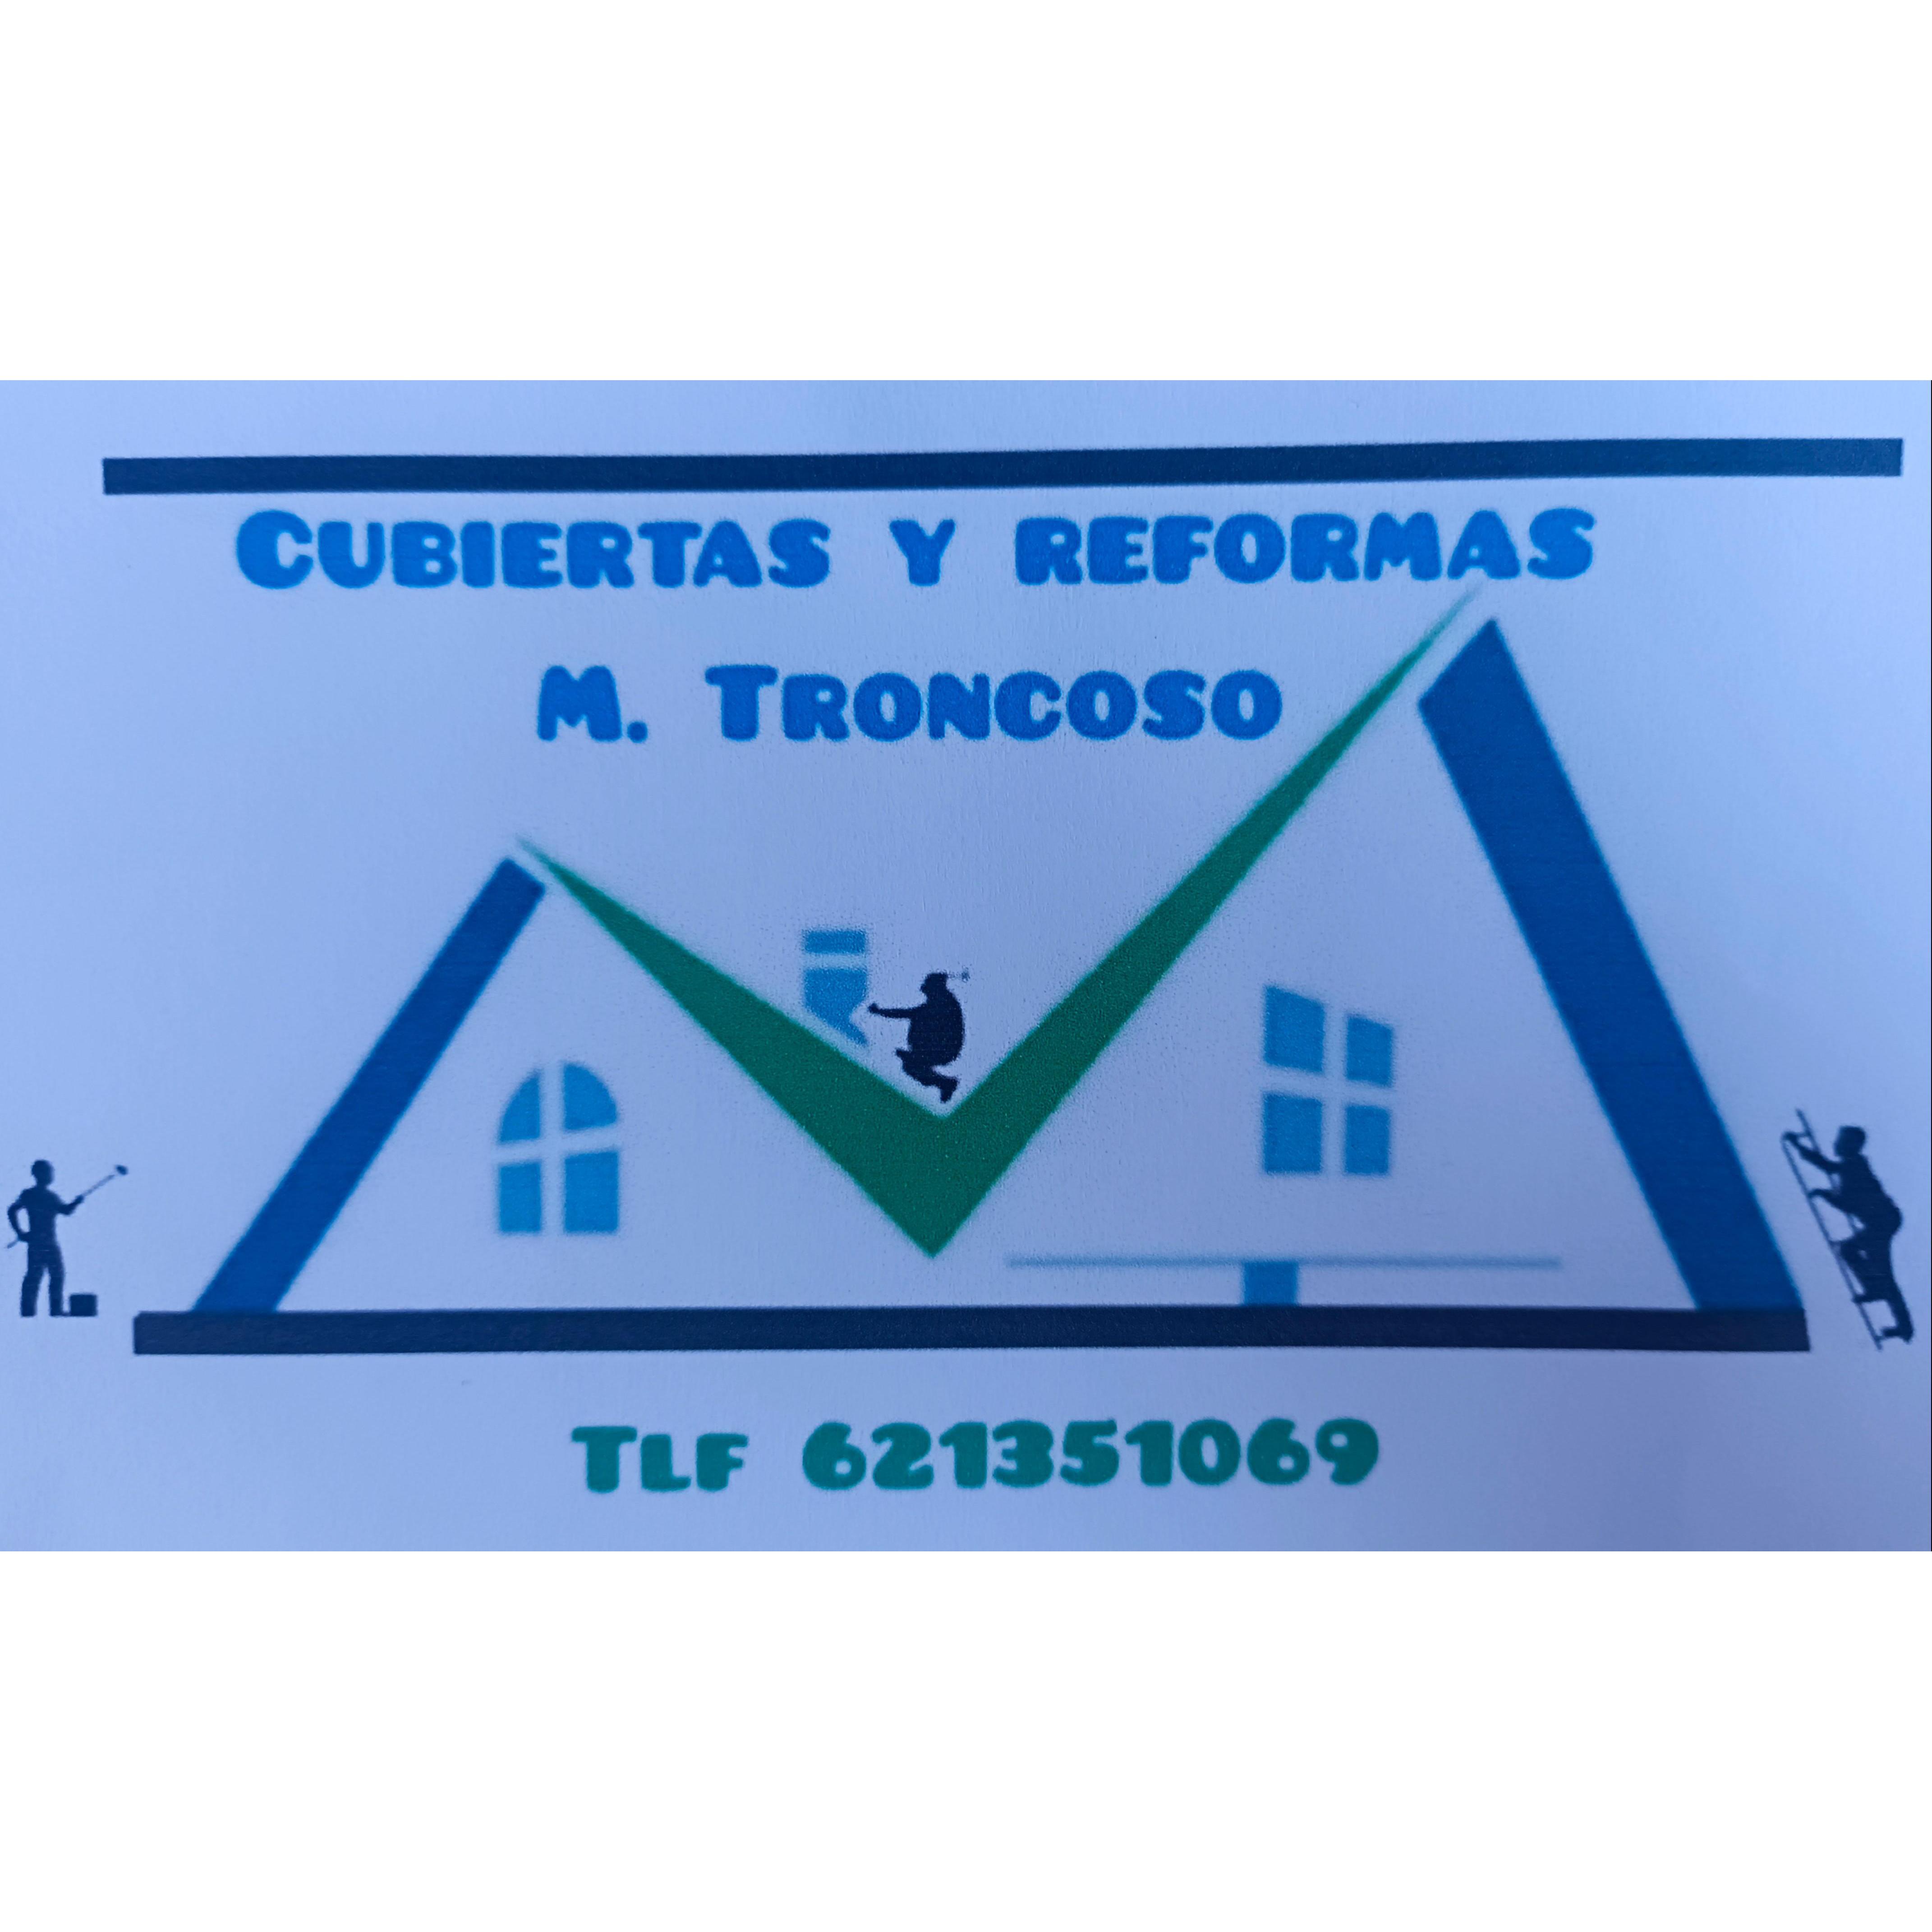 M. Troncoso Cubiertas y Reformas Logo